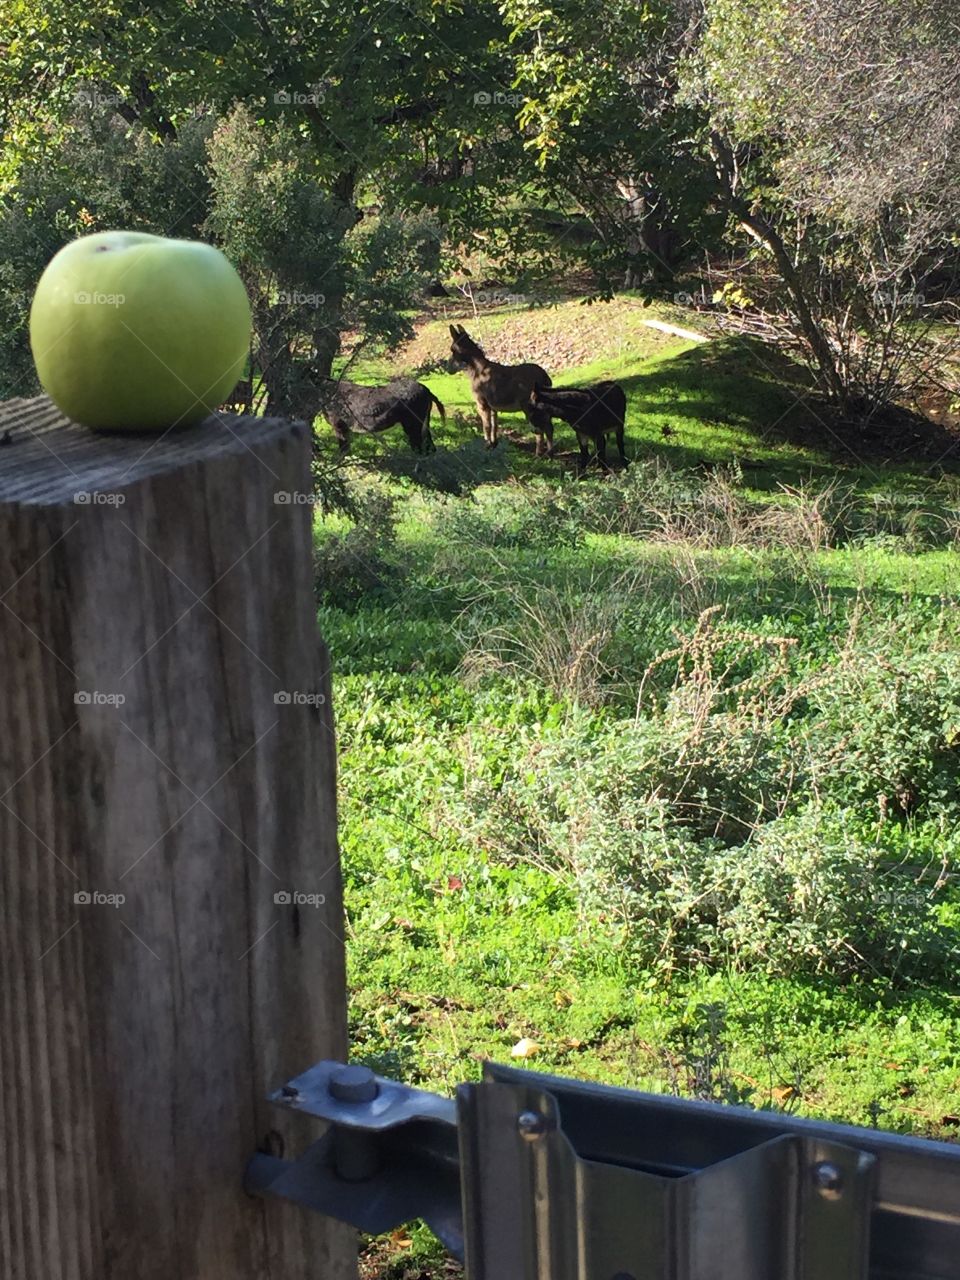 Apple in fence post donkeys 